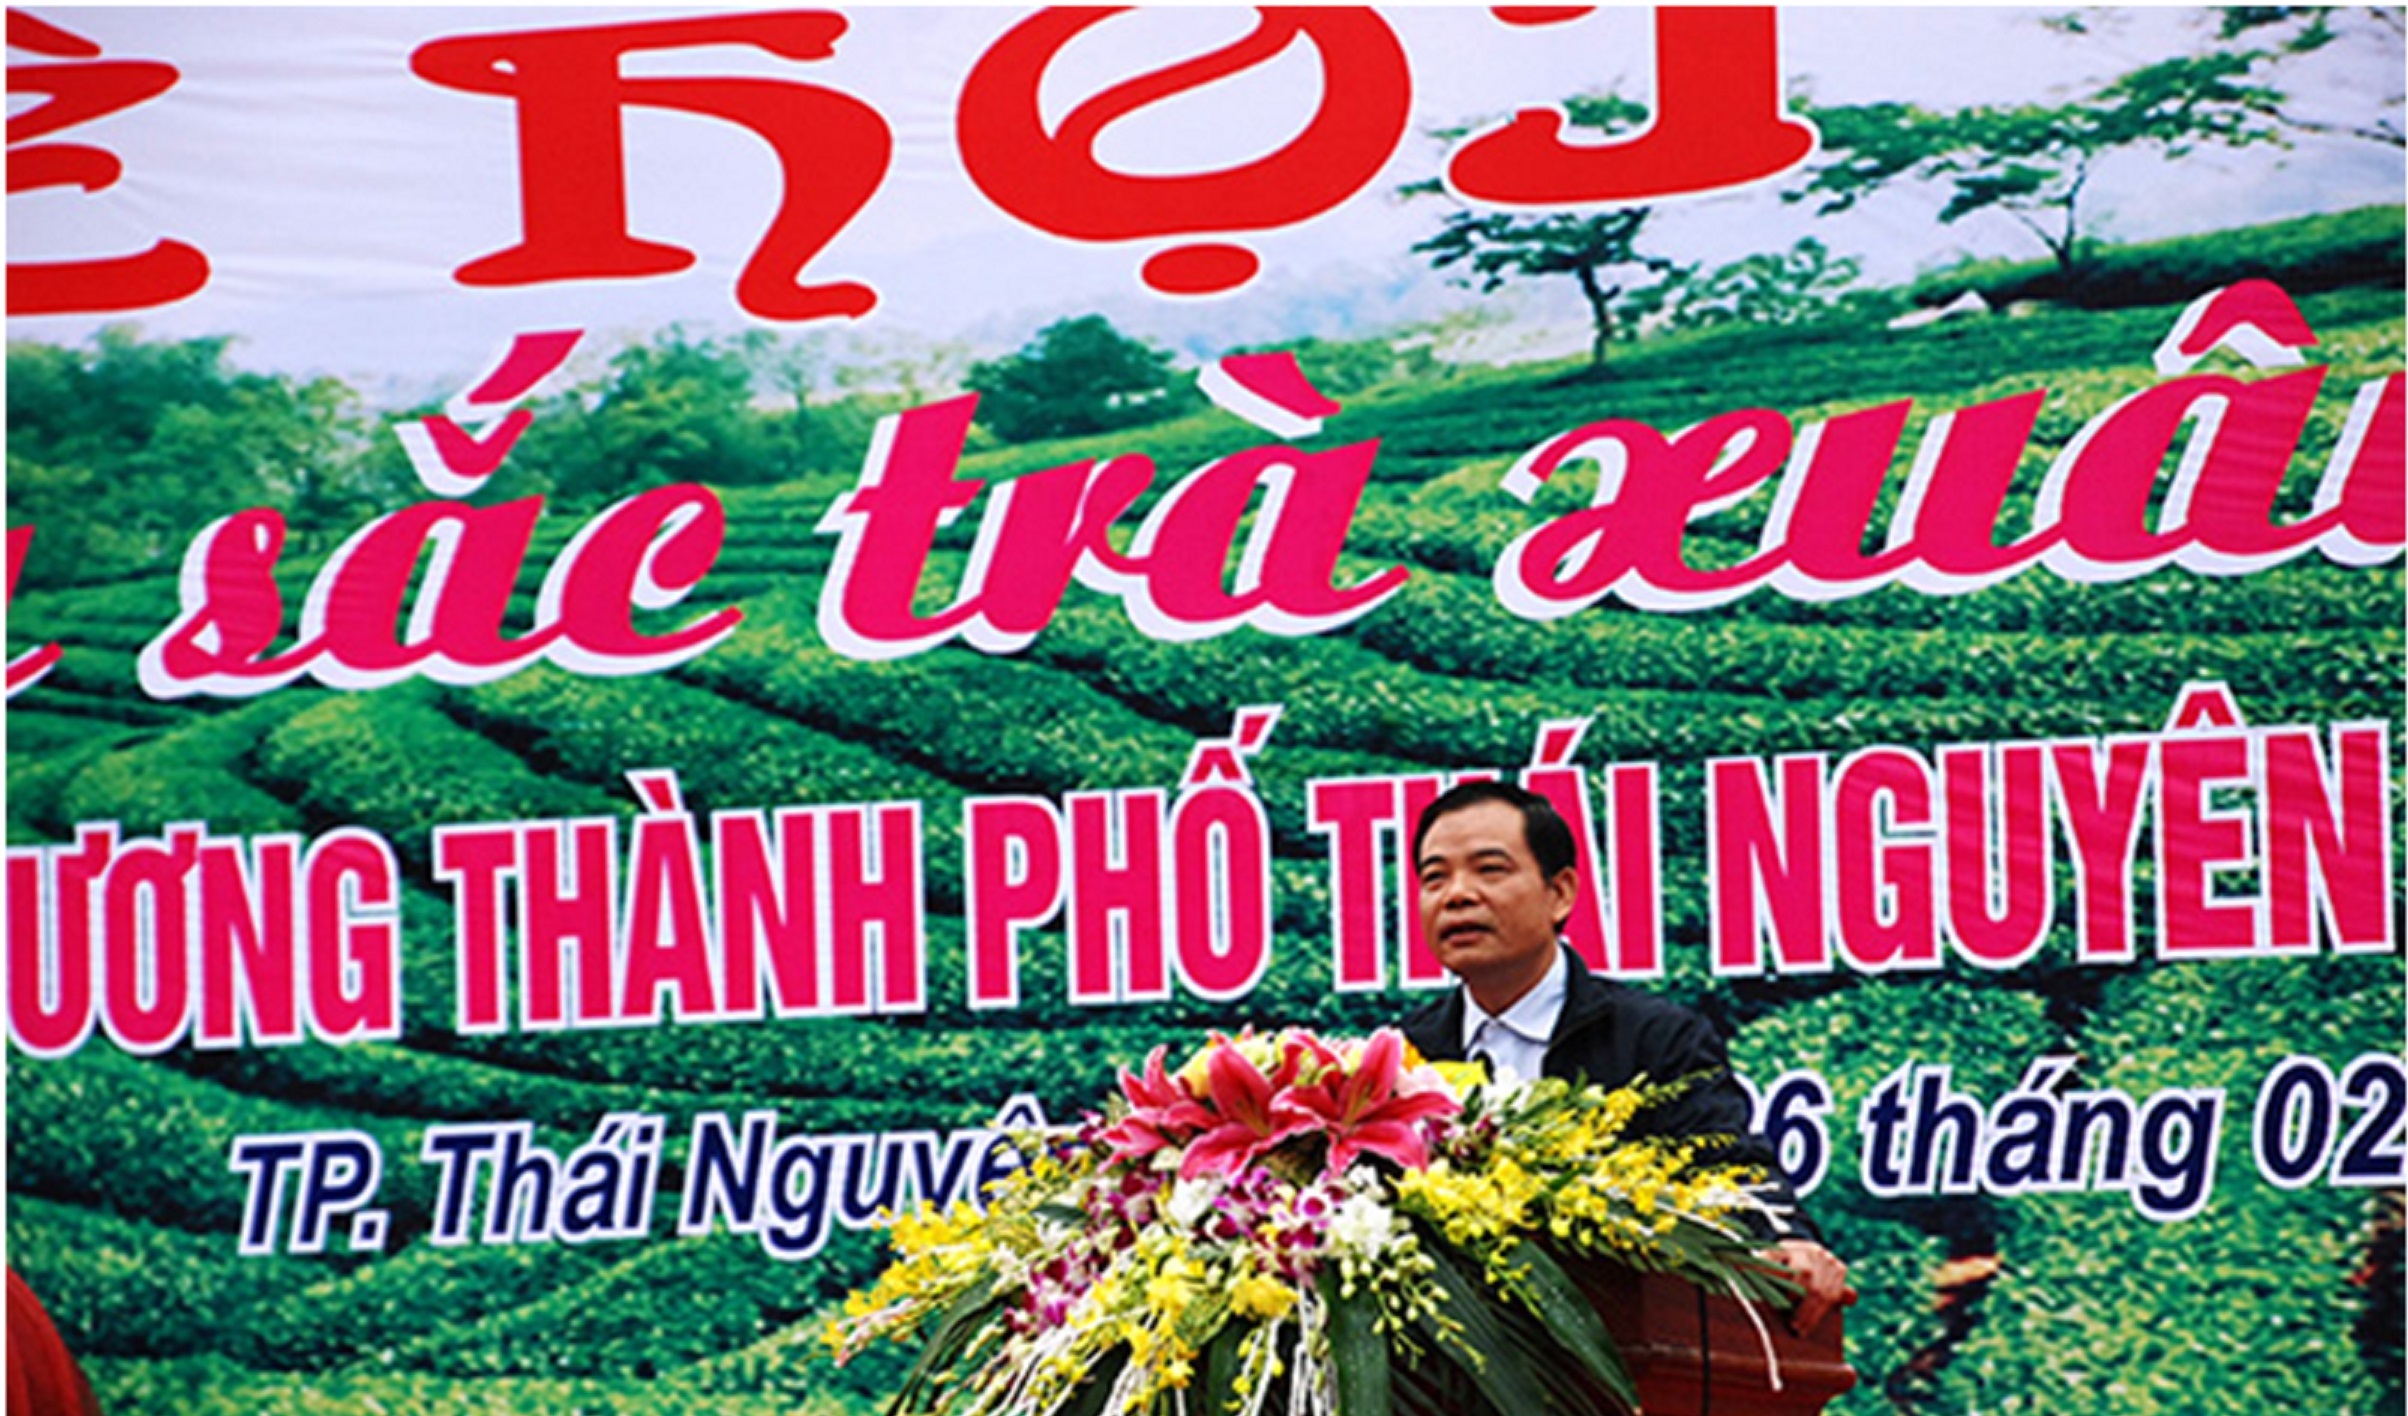 Thái Nguyên: Lễ hội “Hương sắc Trà xuân - Tân Cương” tinh hoa trà Việt trong thời kỳ mới - Hình 1